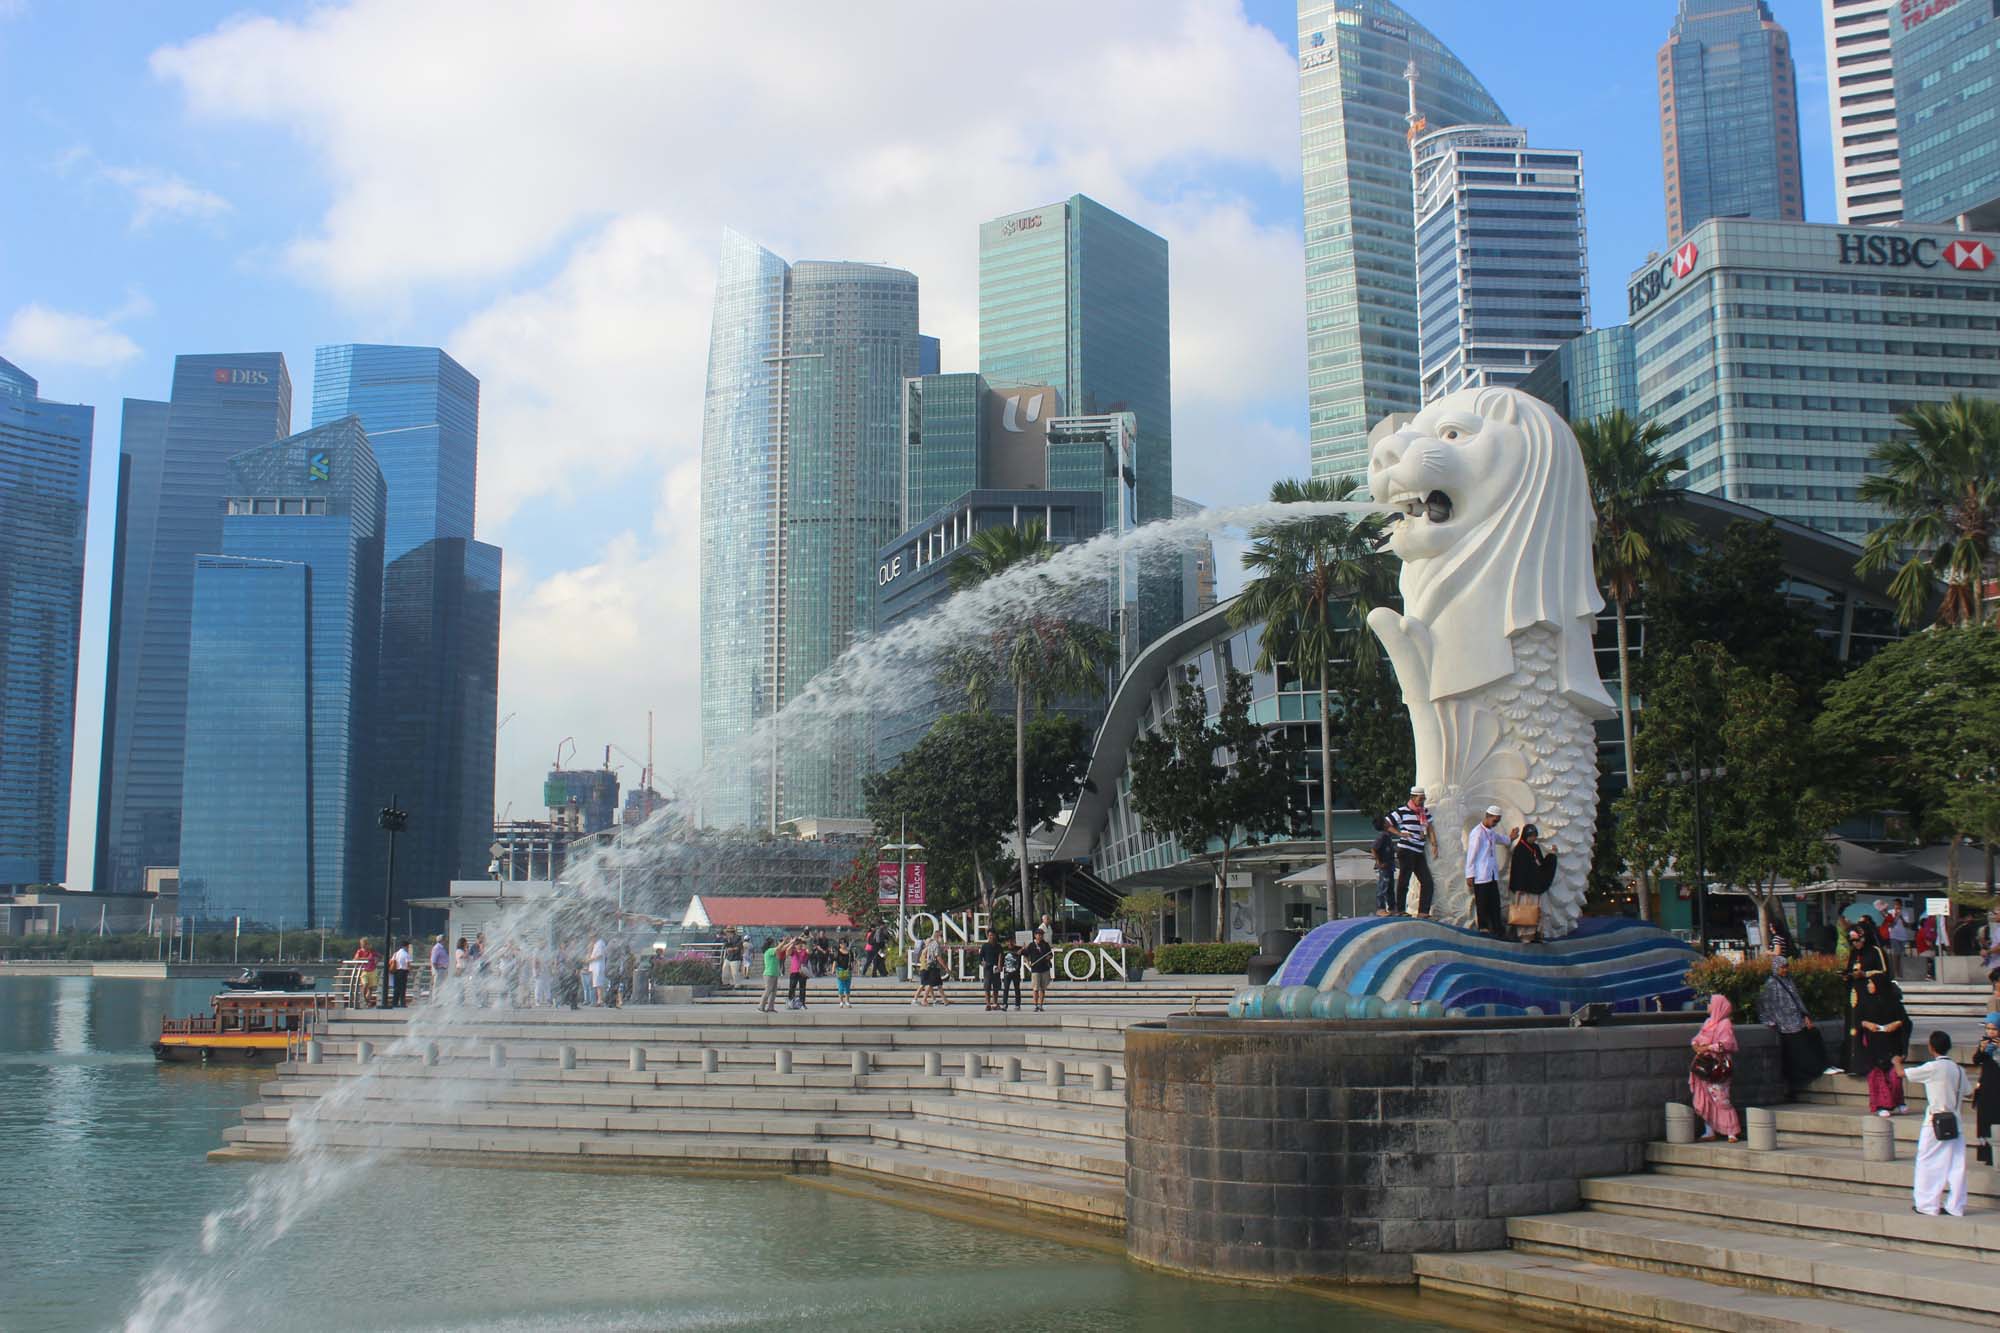 merlion park singapore - 11 địa điểm bạn không nên bỏ qua khi đến Singapore